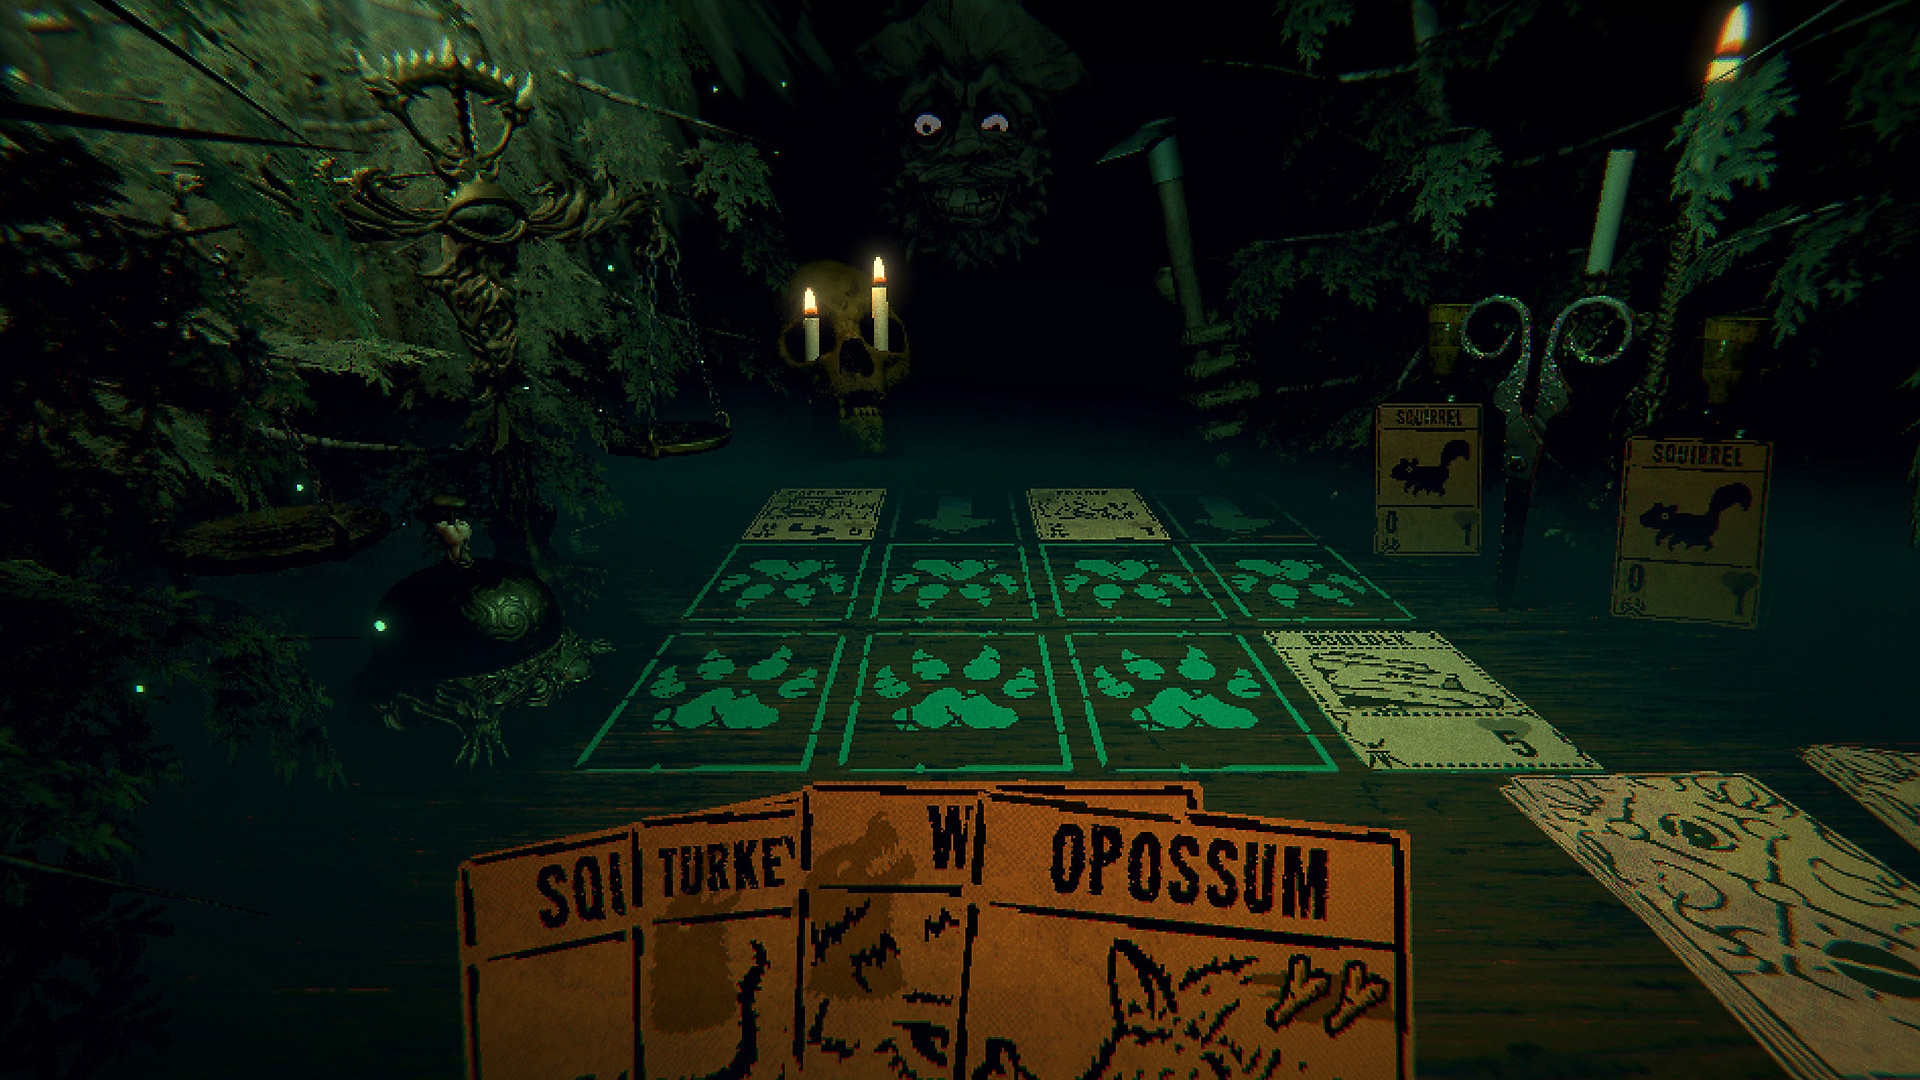 Capture d'écran du gameplay d'Inscryption montrant une main de cartes en premier plan et une silhouette sombre au loin.